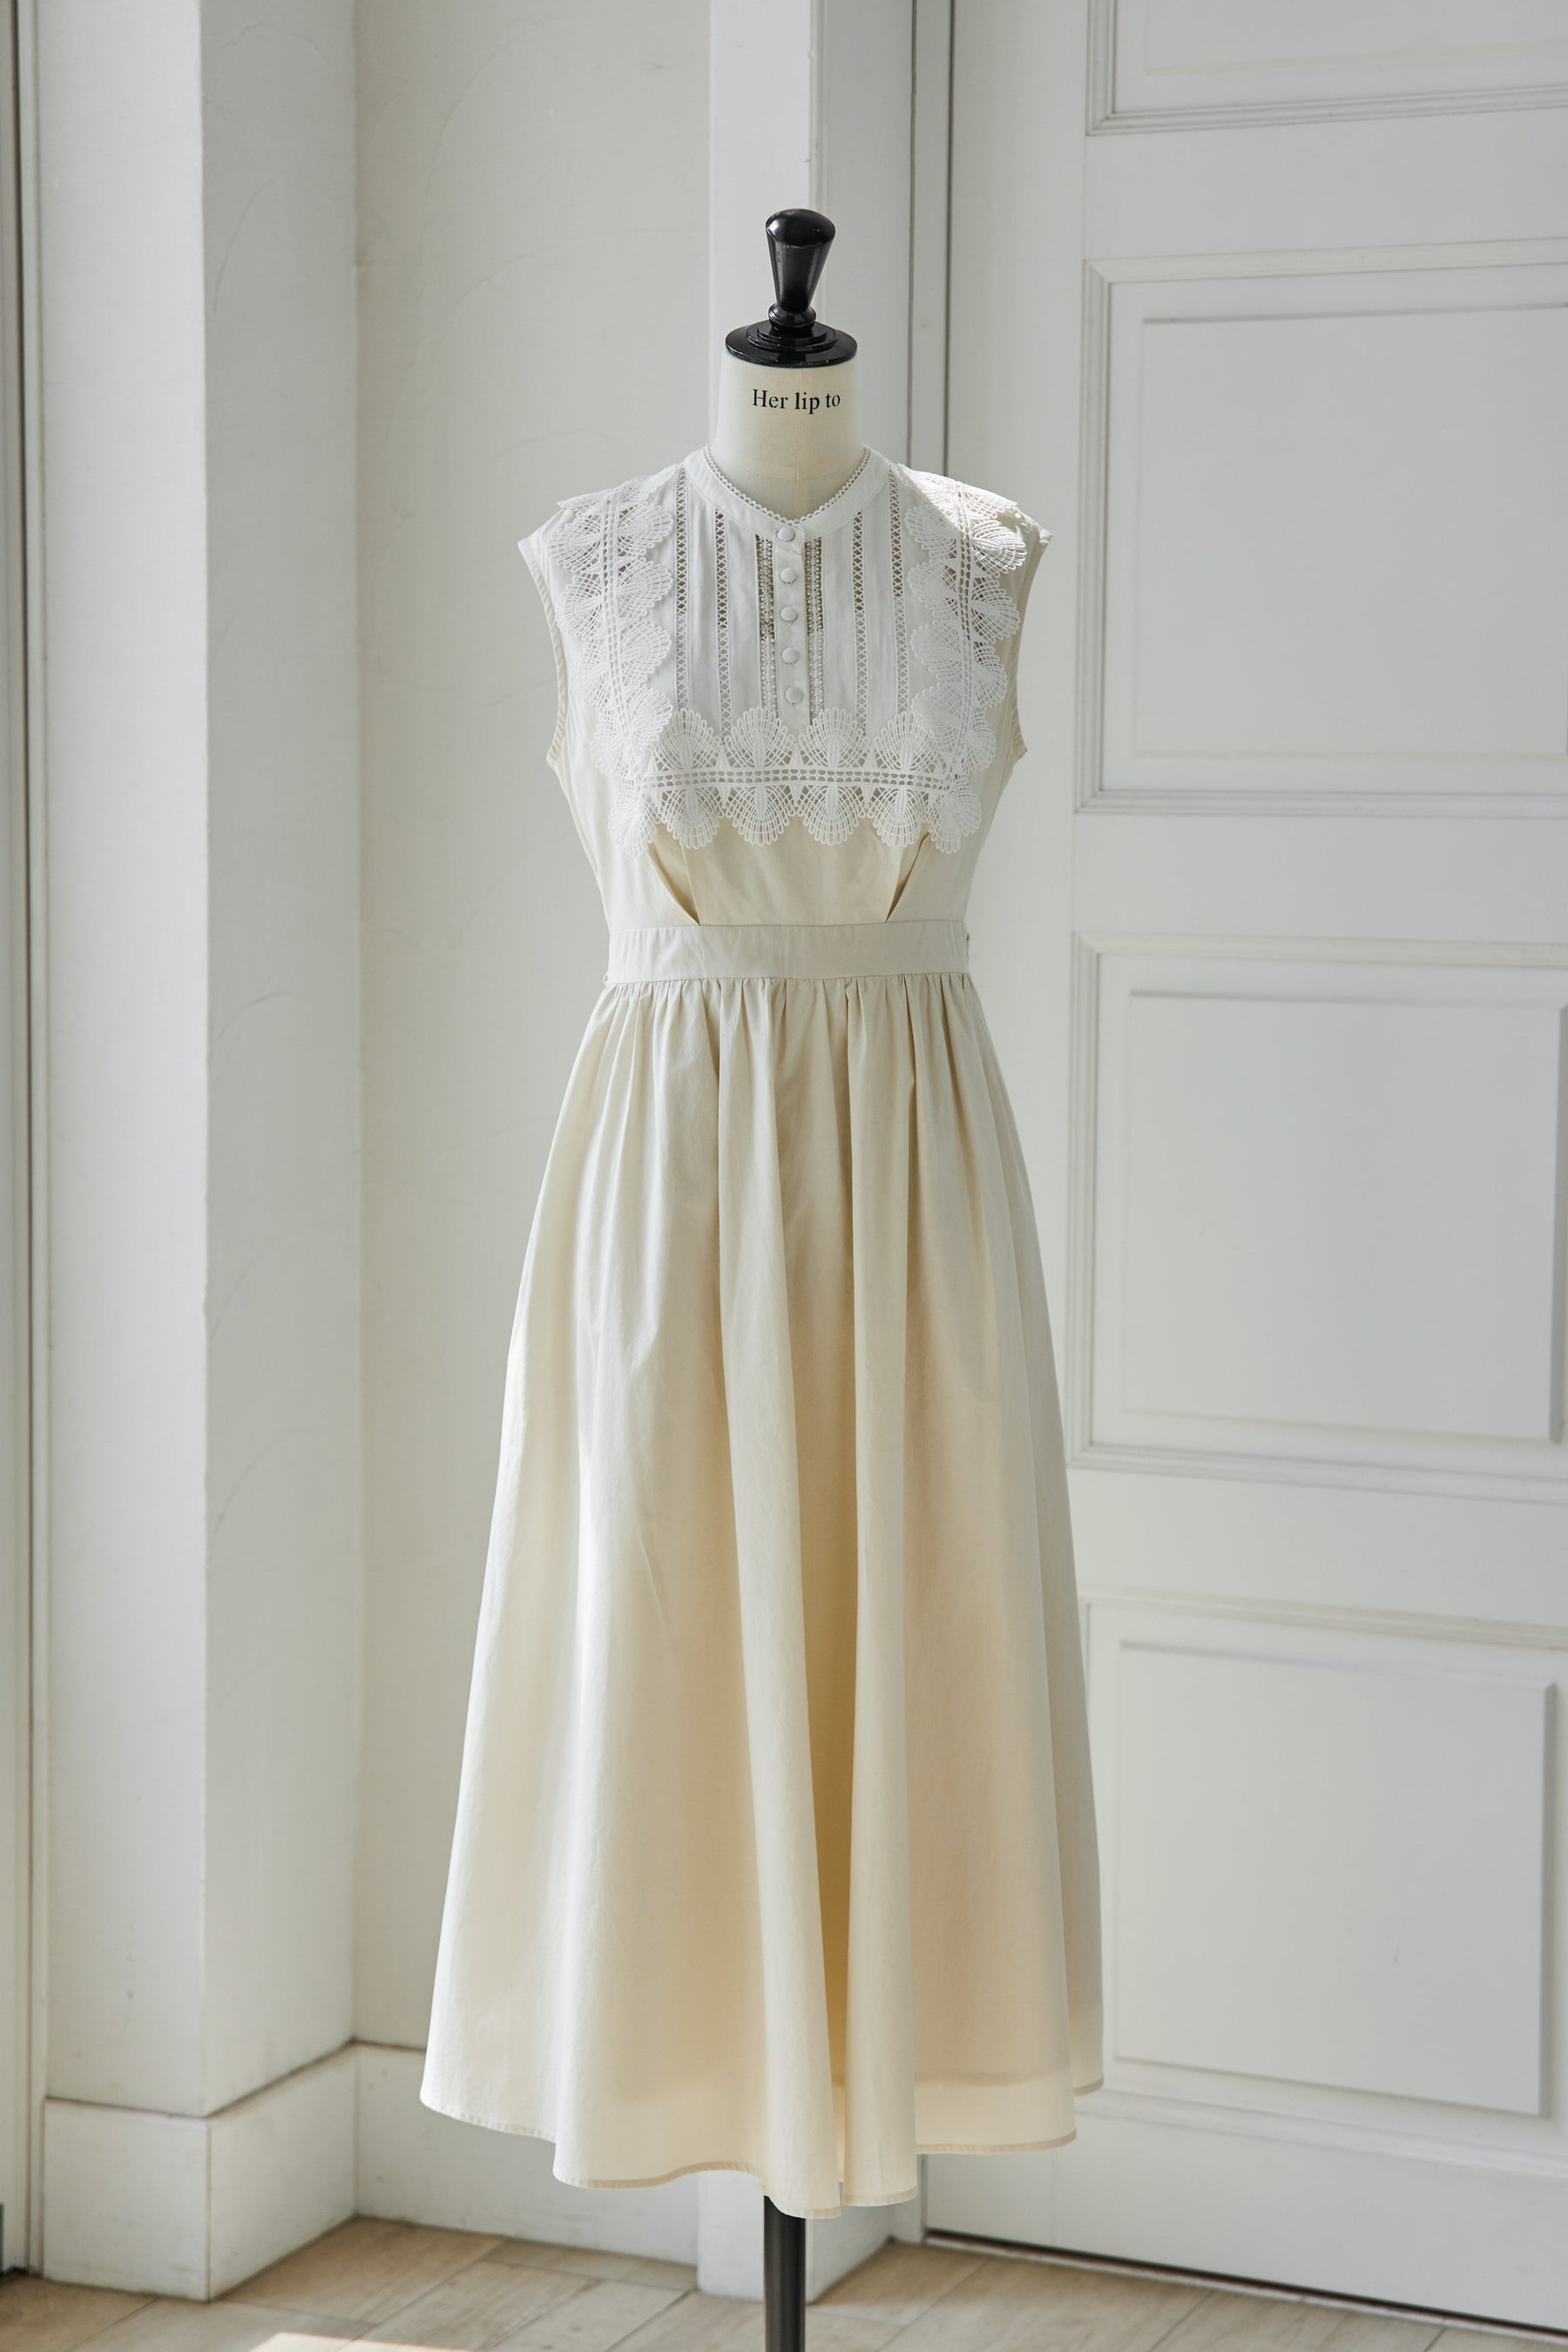 新品Herlipto Grace Cotton-Blend Long Dress | www.angeloawards.com